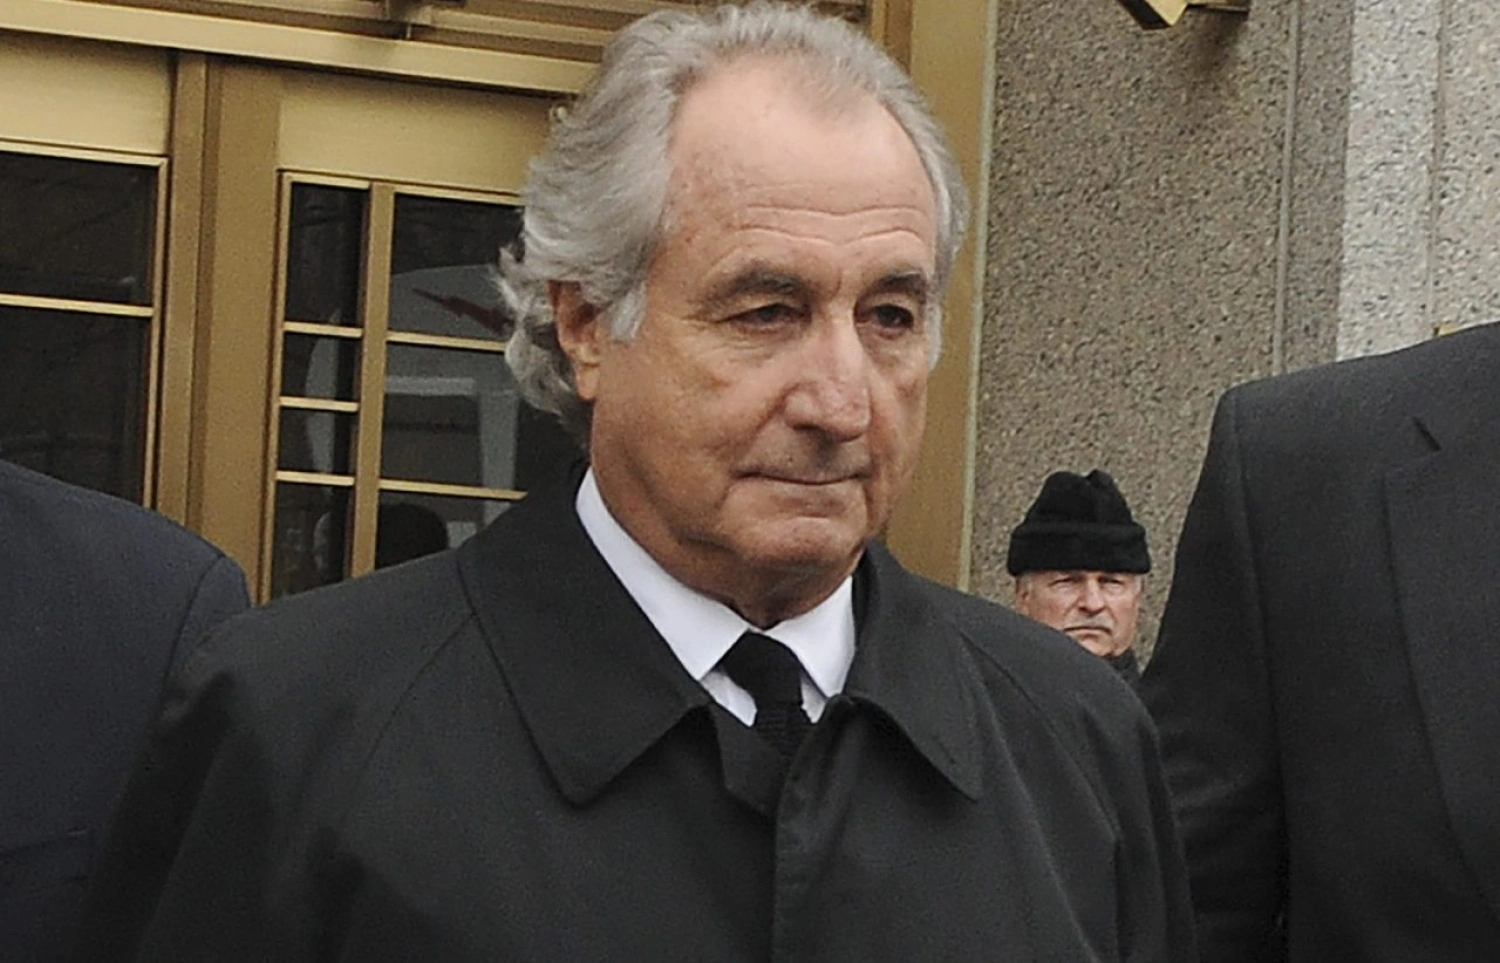 Zomrel najväčší podvodník v histórii USA Bernie Madoff. Spreneveril asi 65 mld. dolárov